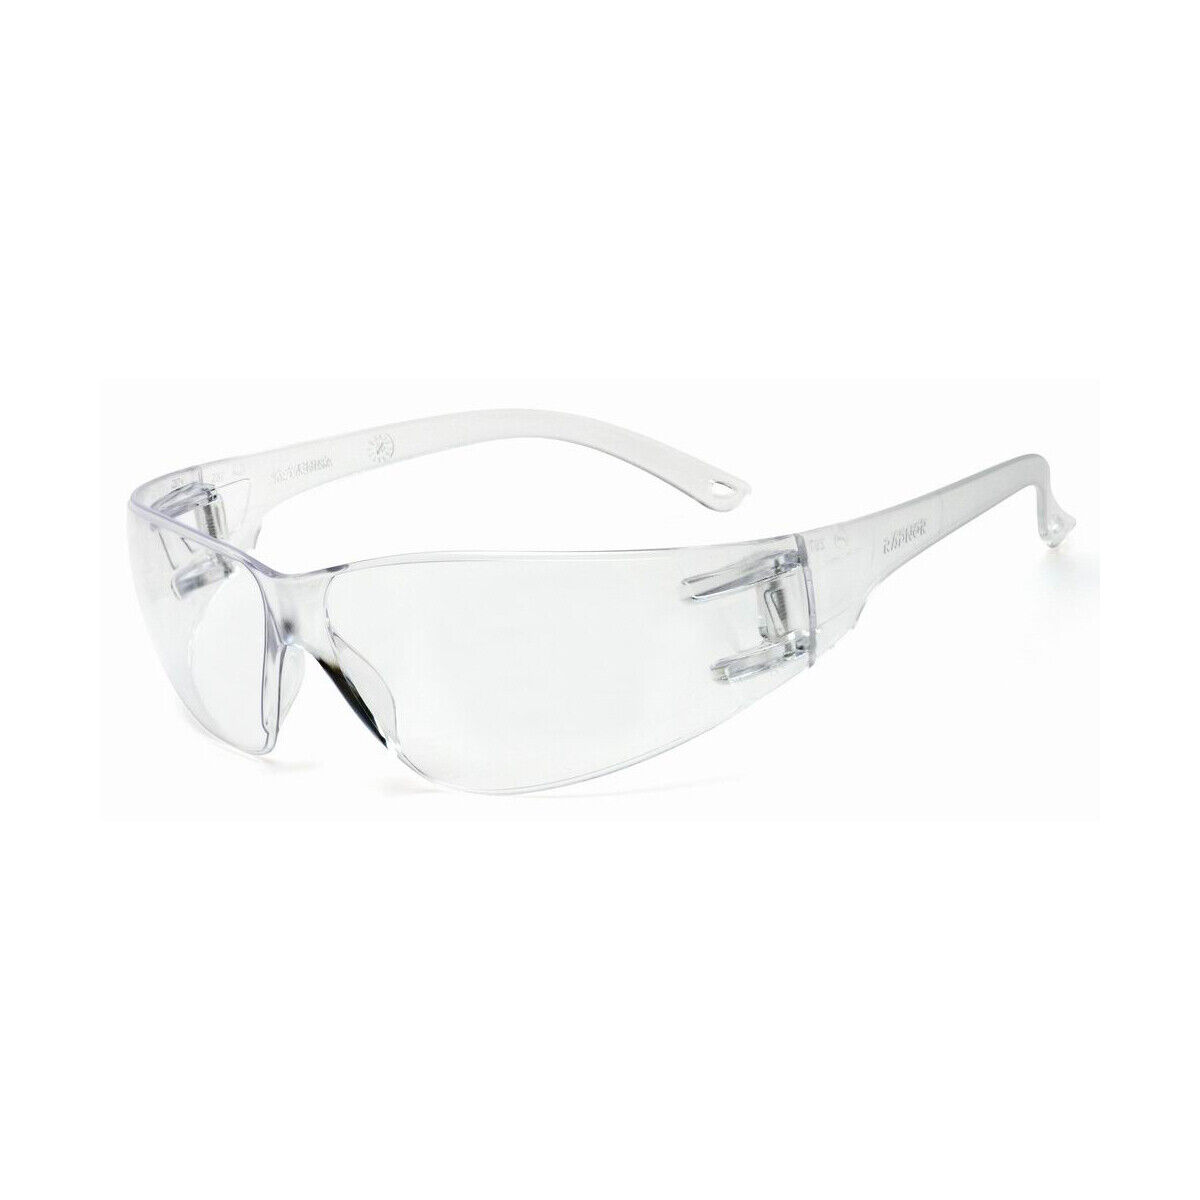 Clean Lens EN166 Spec PPE Safety Work Glasses 